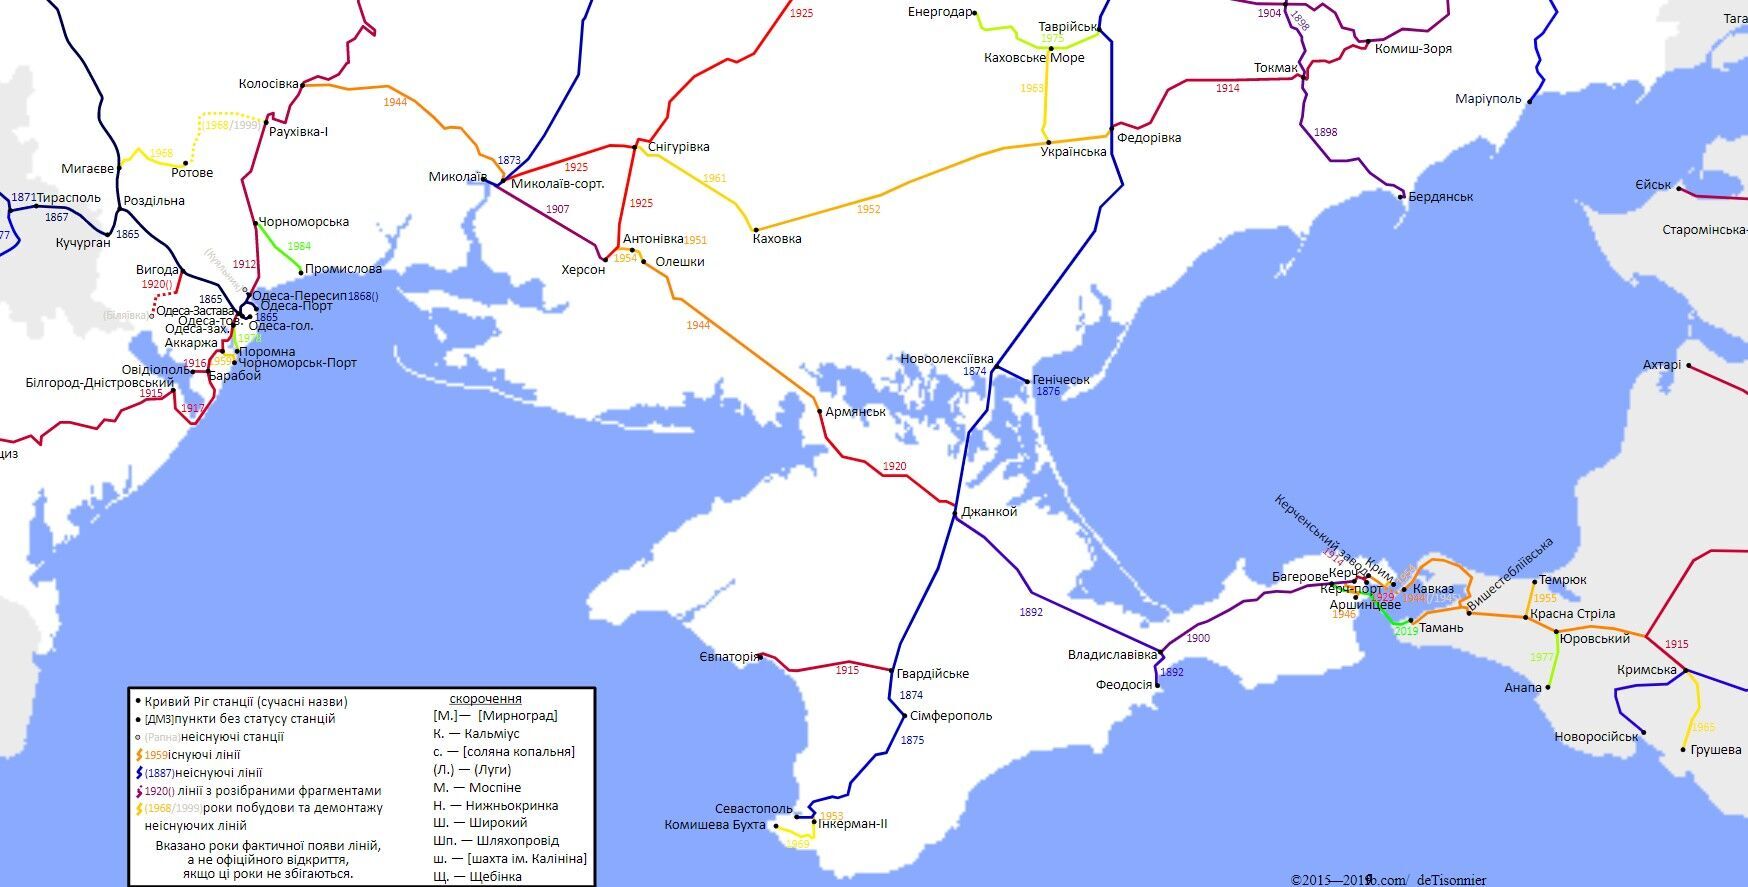 Карта залізничних шляхів в Україні - фрагмент, Крим